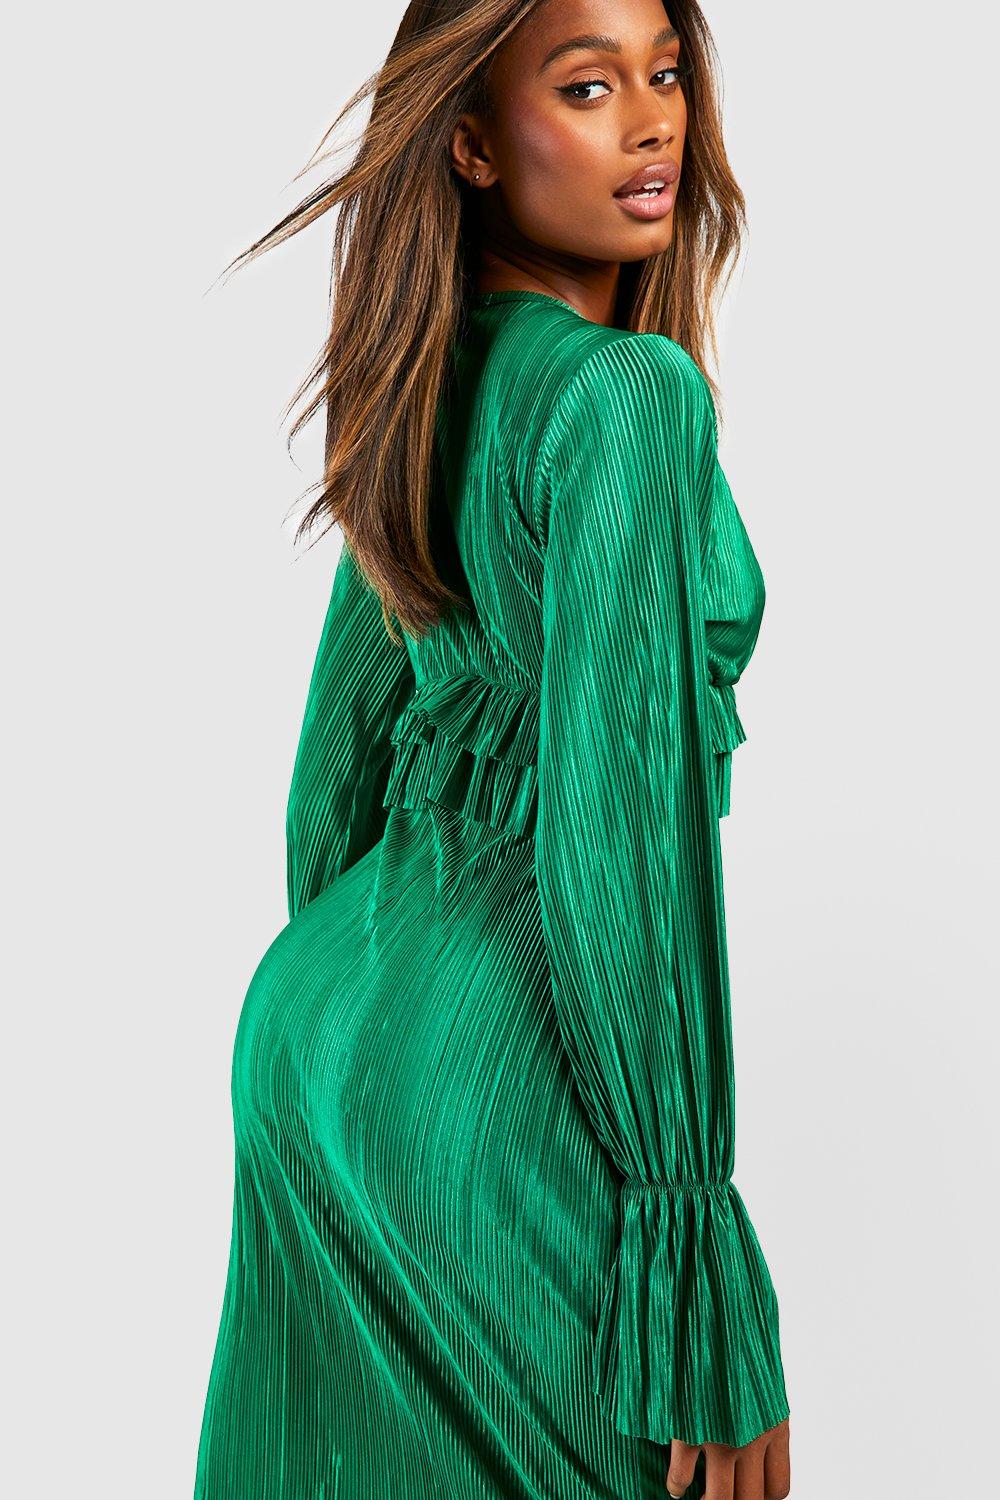 boohoo green dress